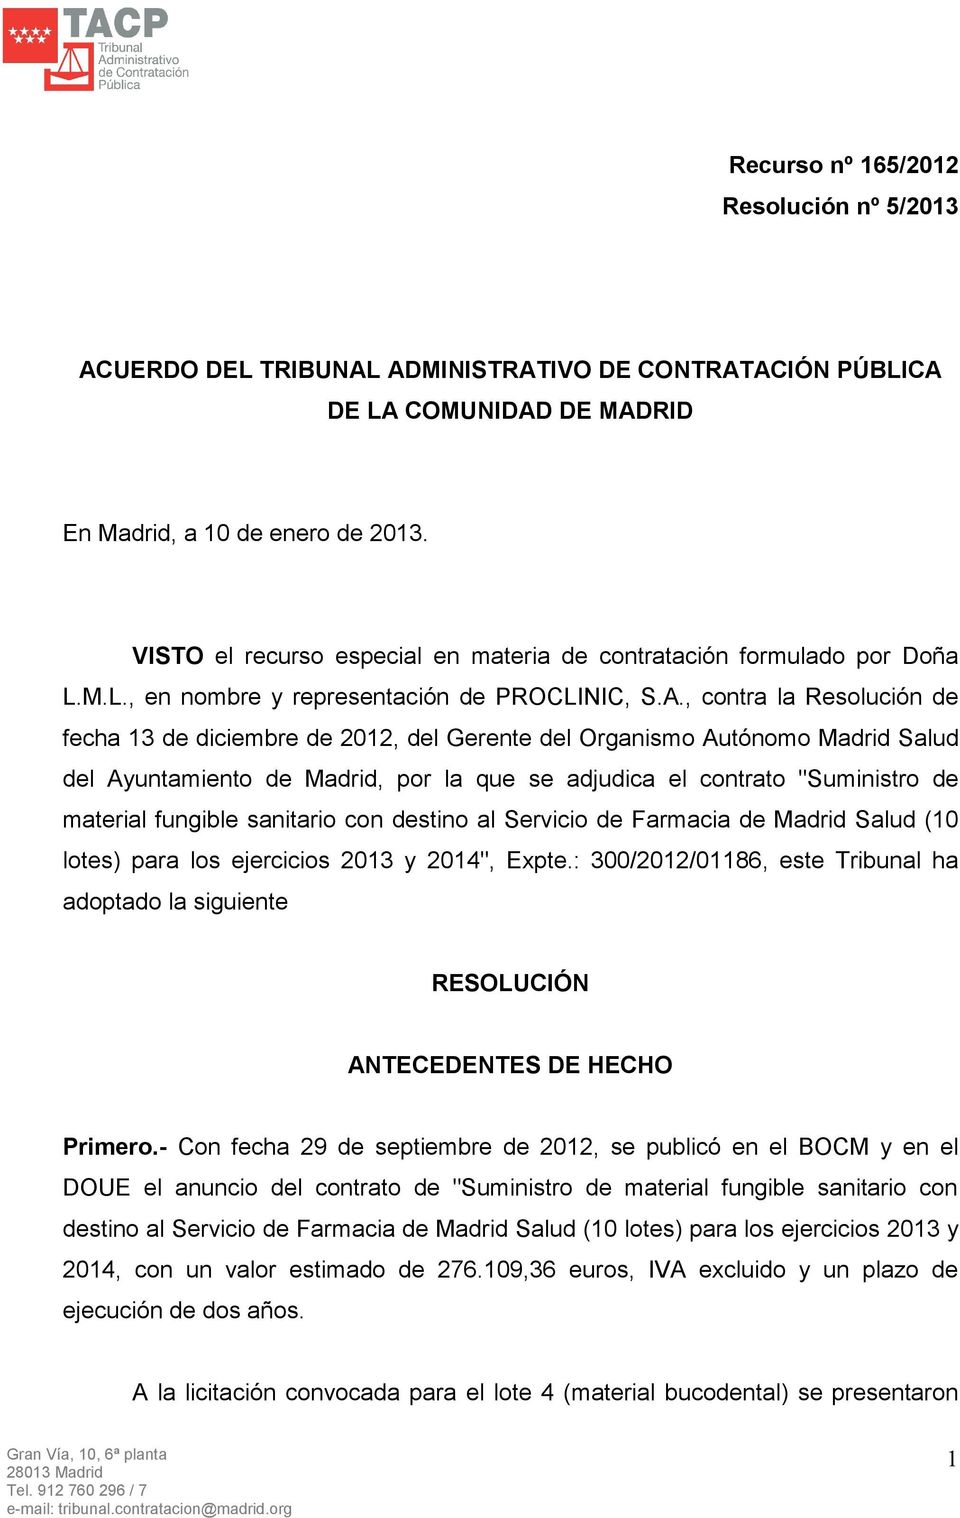 , contra la Resolución de fecha 13 de diciembre de 2012, del Gerente del Organismo Autónomo Madrid Salud del Ayuntamiento de Madrid, por la que se adjudica el contrato "Suministro de material